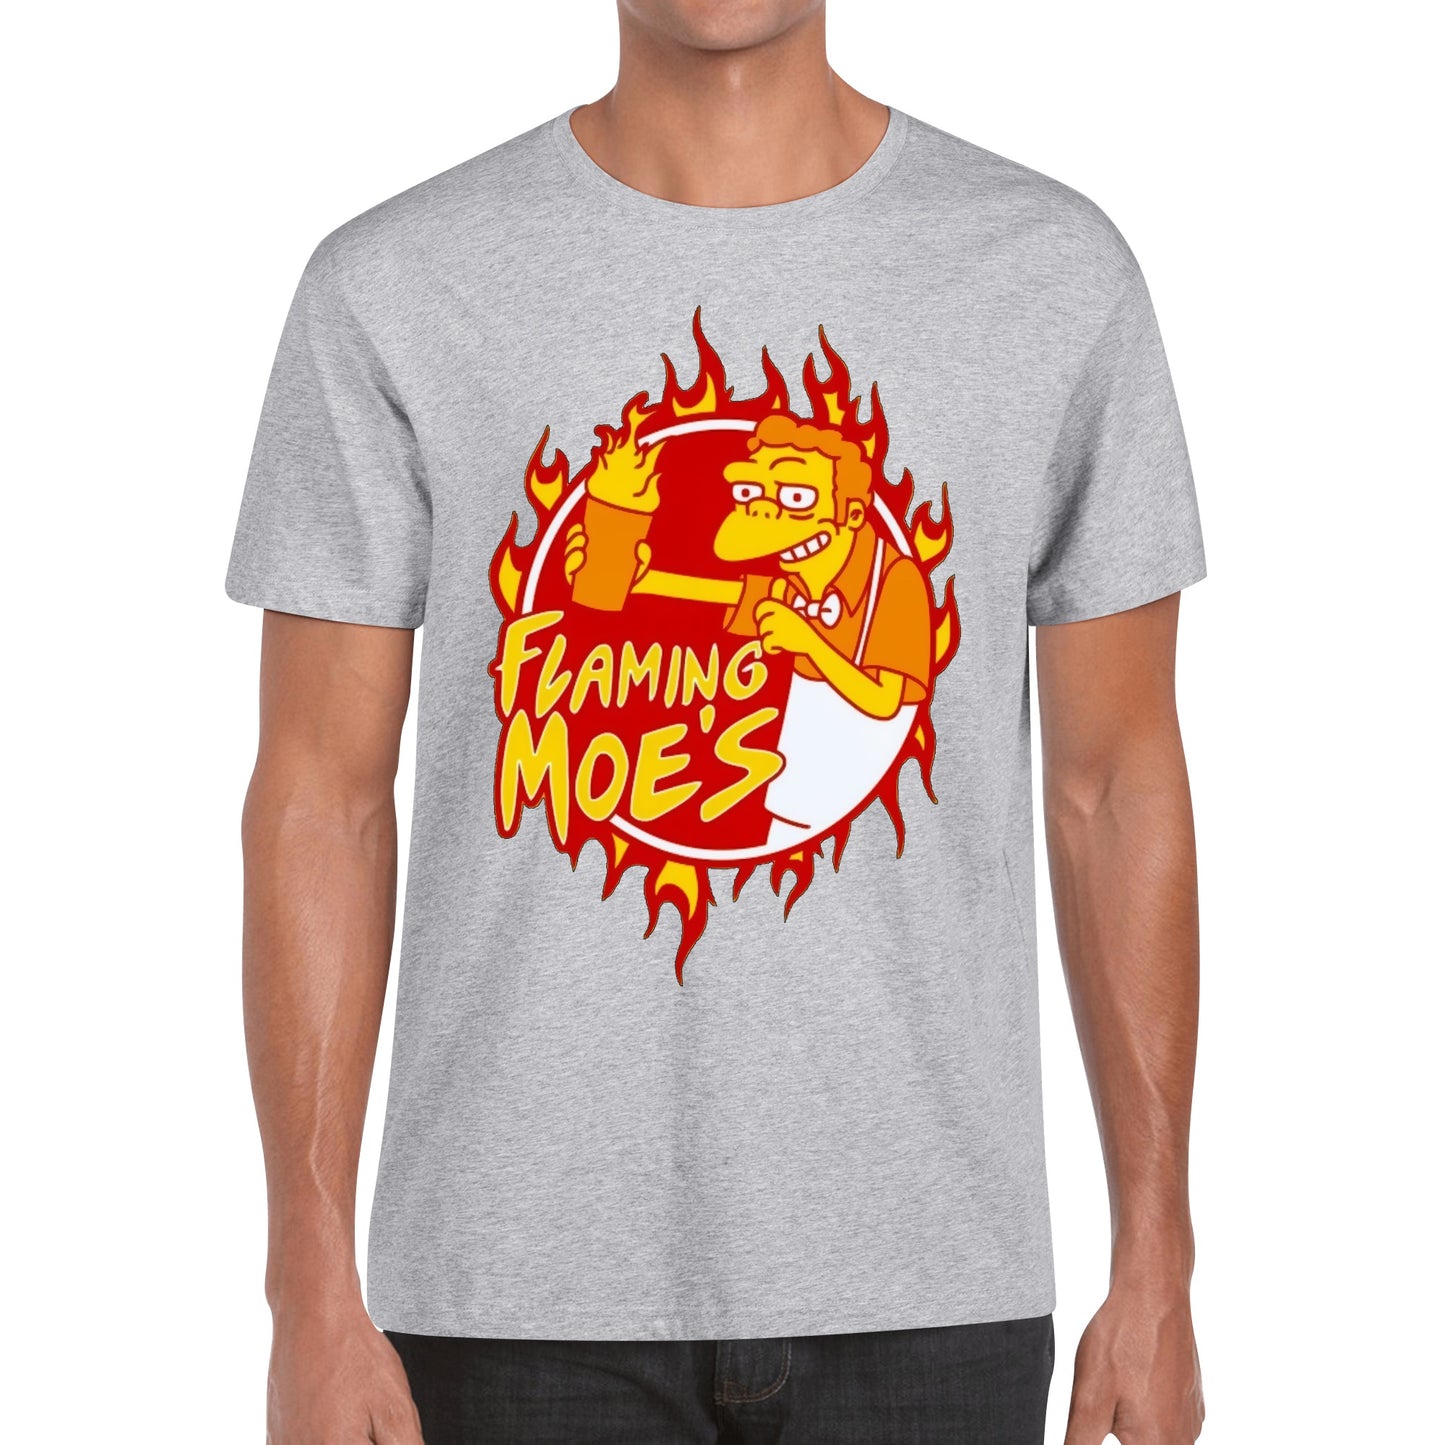 T-Shirt Flaming Moes